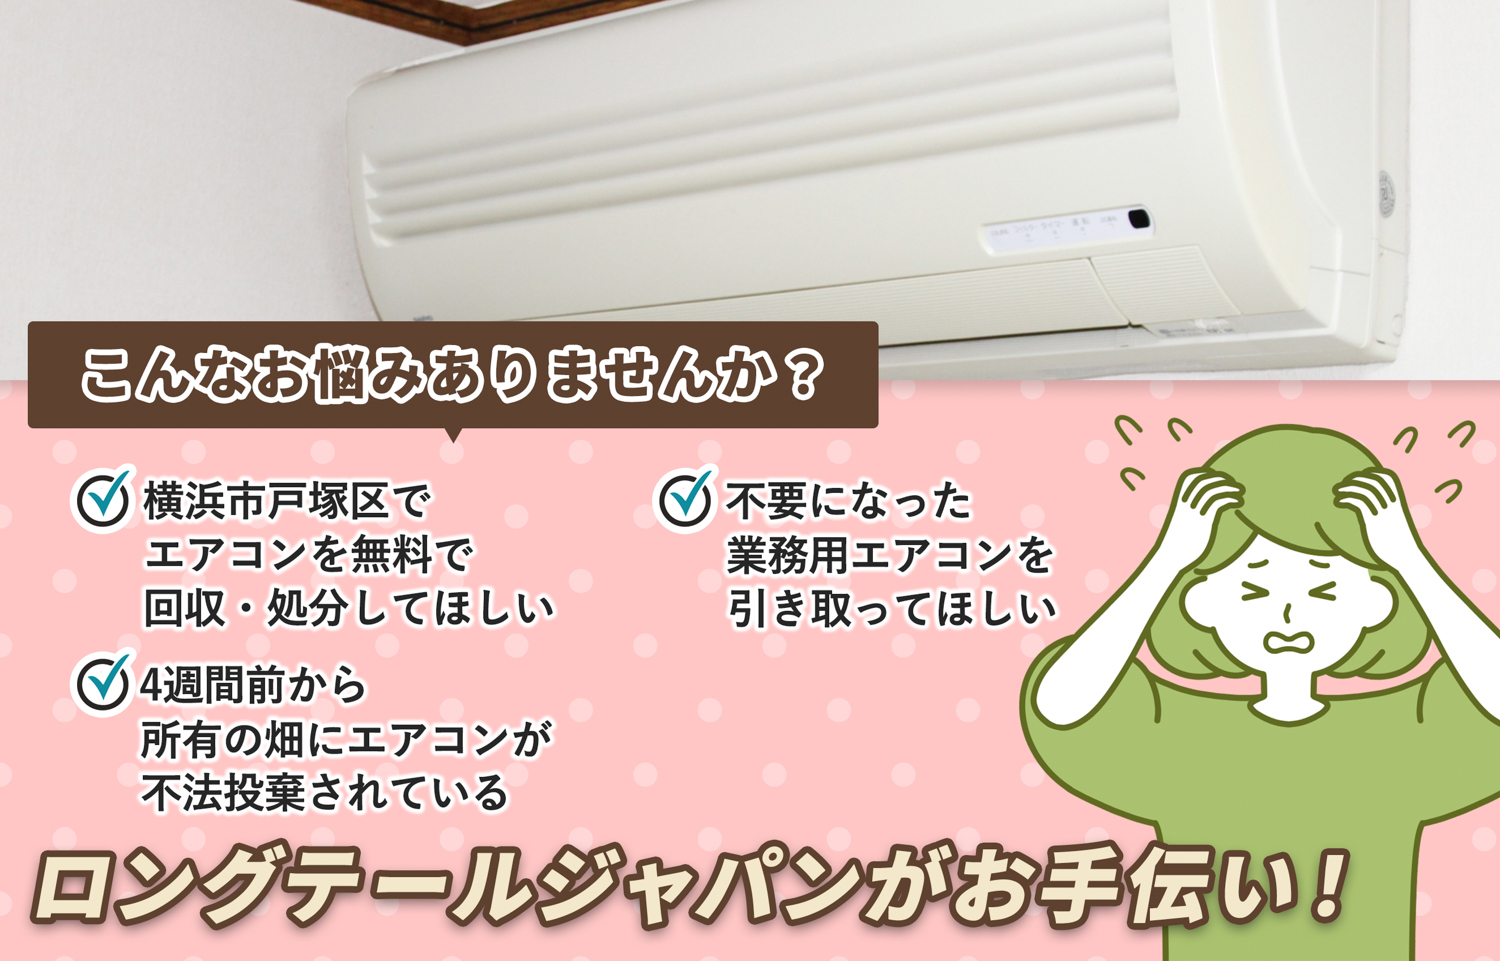 横浜市戸塚区でこんなエアコンの処分にお困りでしたらエアコン無料回収処分隊がお手伝いします。